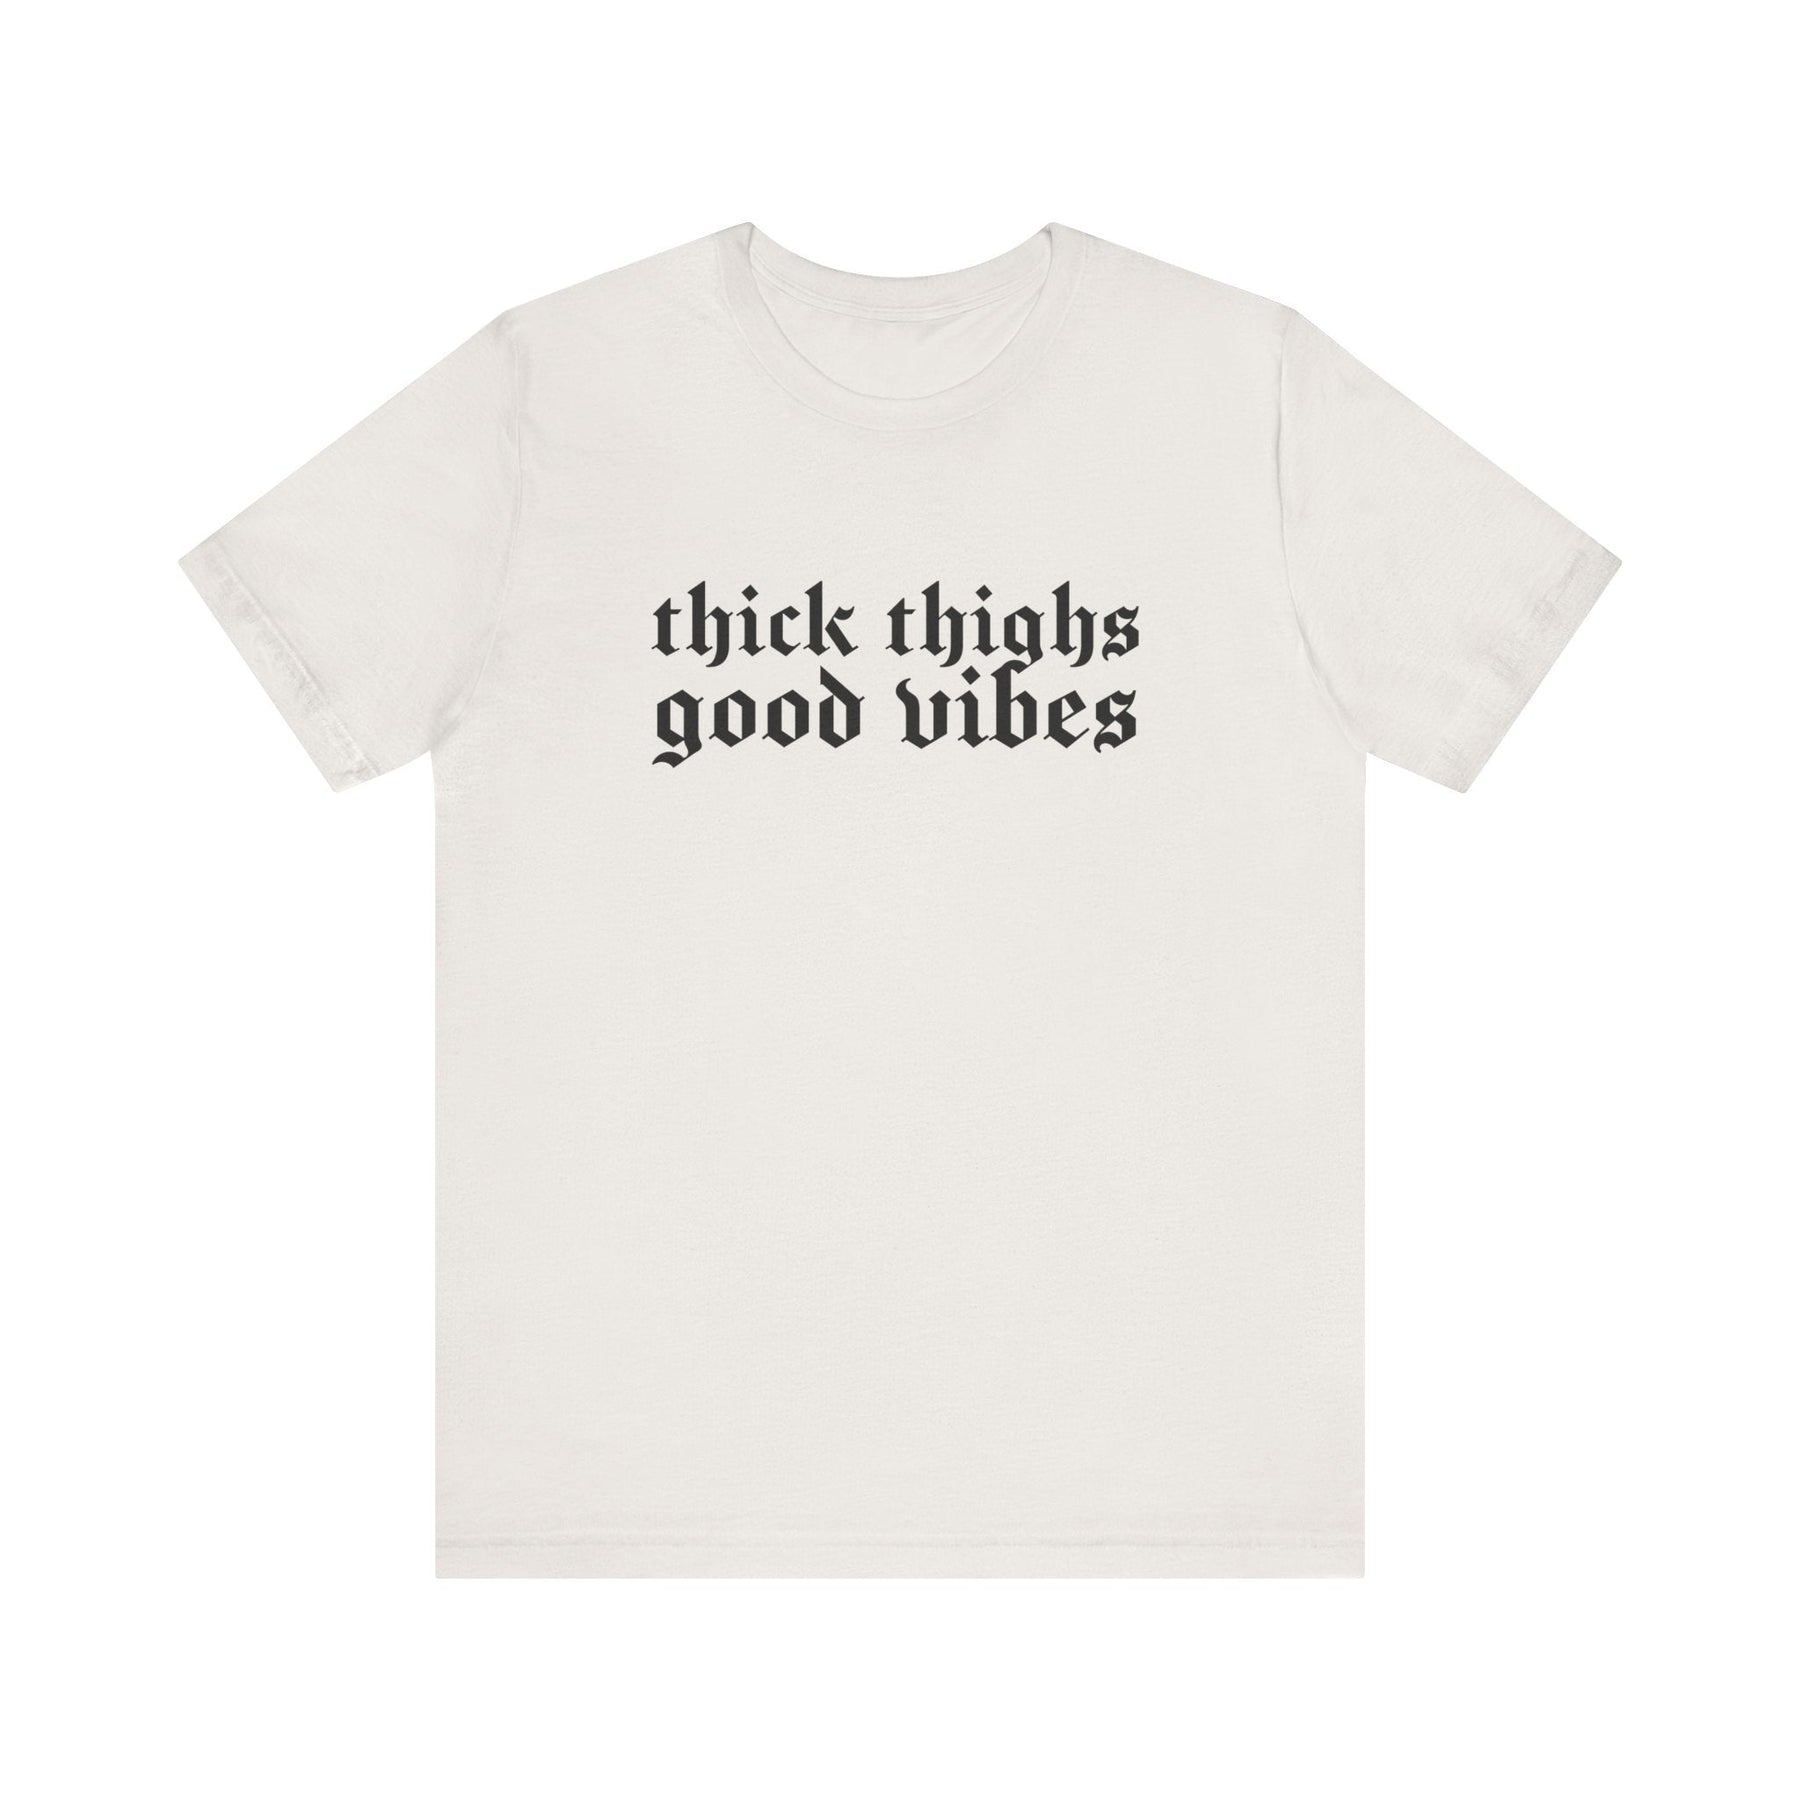 Thick Thighs, Good Vibes T-Shirt - Goth Cloth Co.T-Shirt12896336628475036214